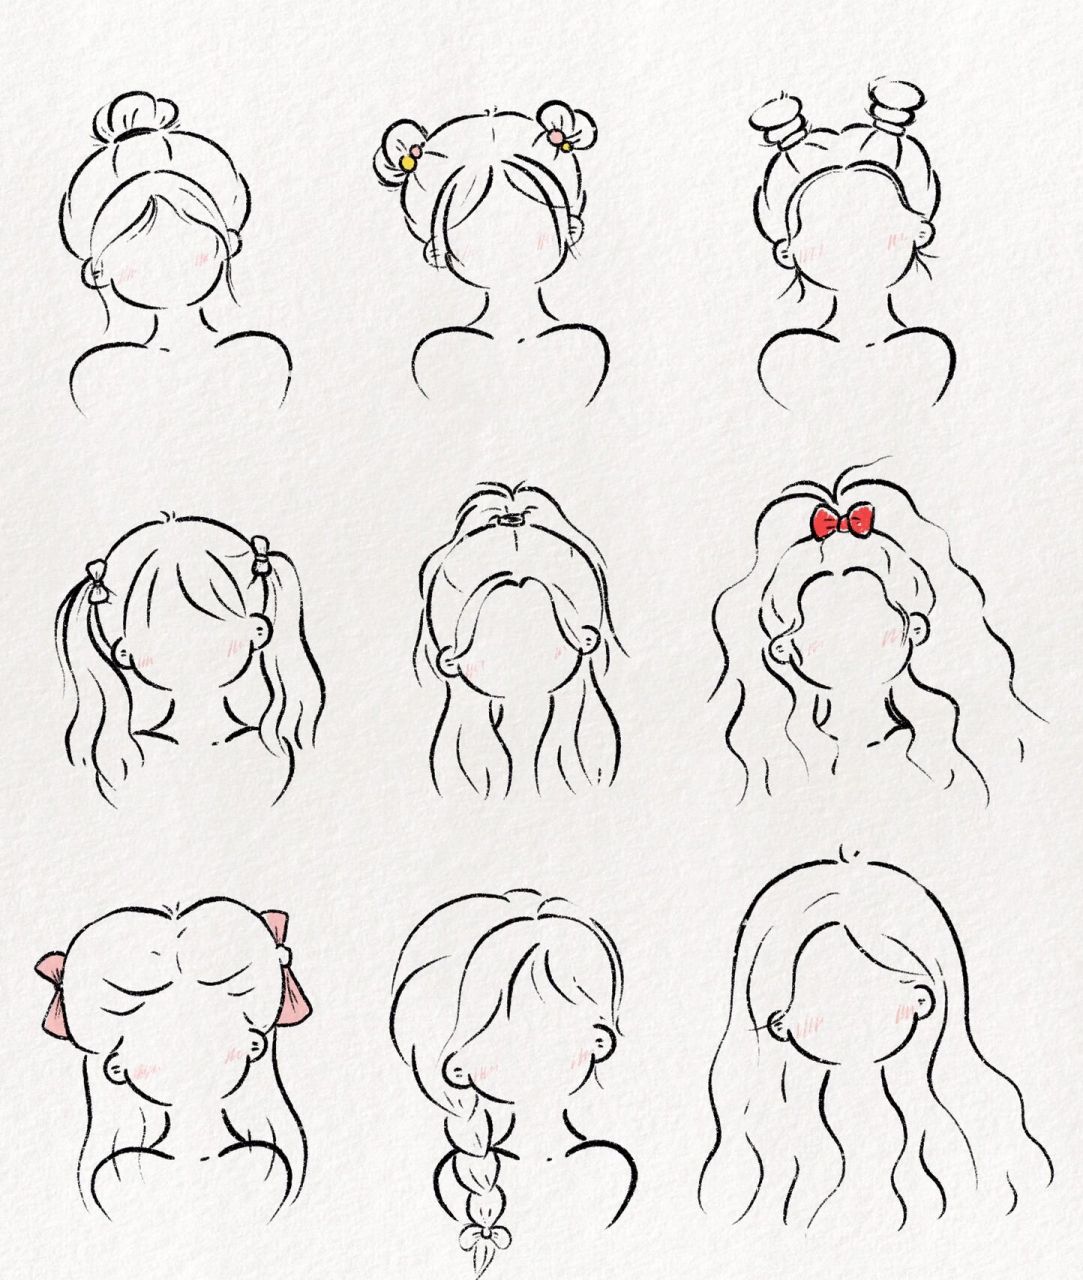 可爱简笔画教程:九种常见发型画法 快来一试